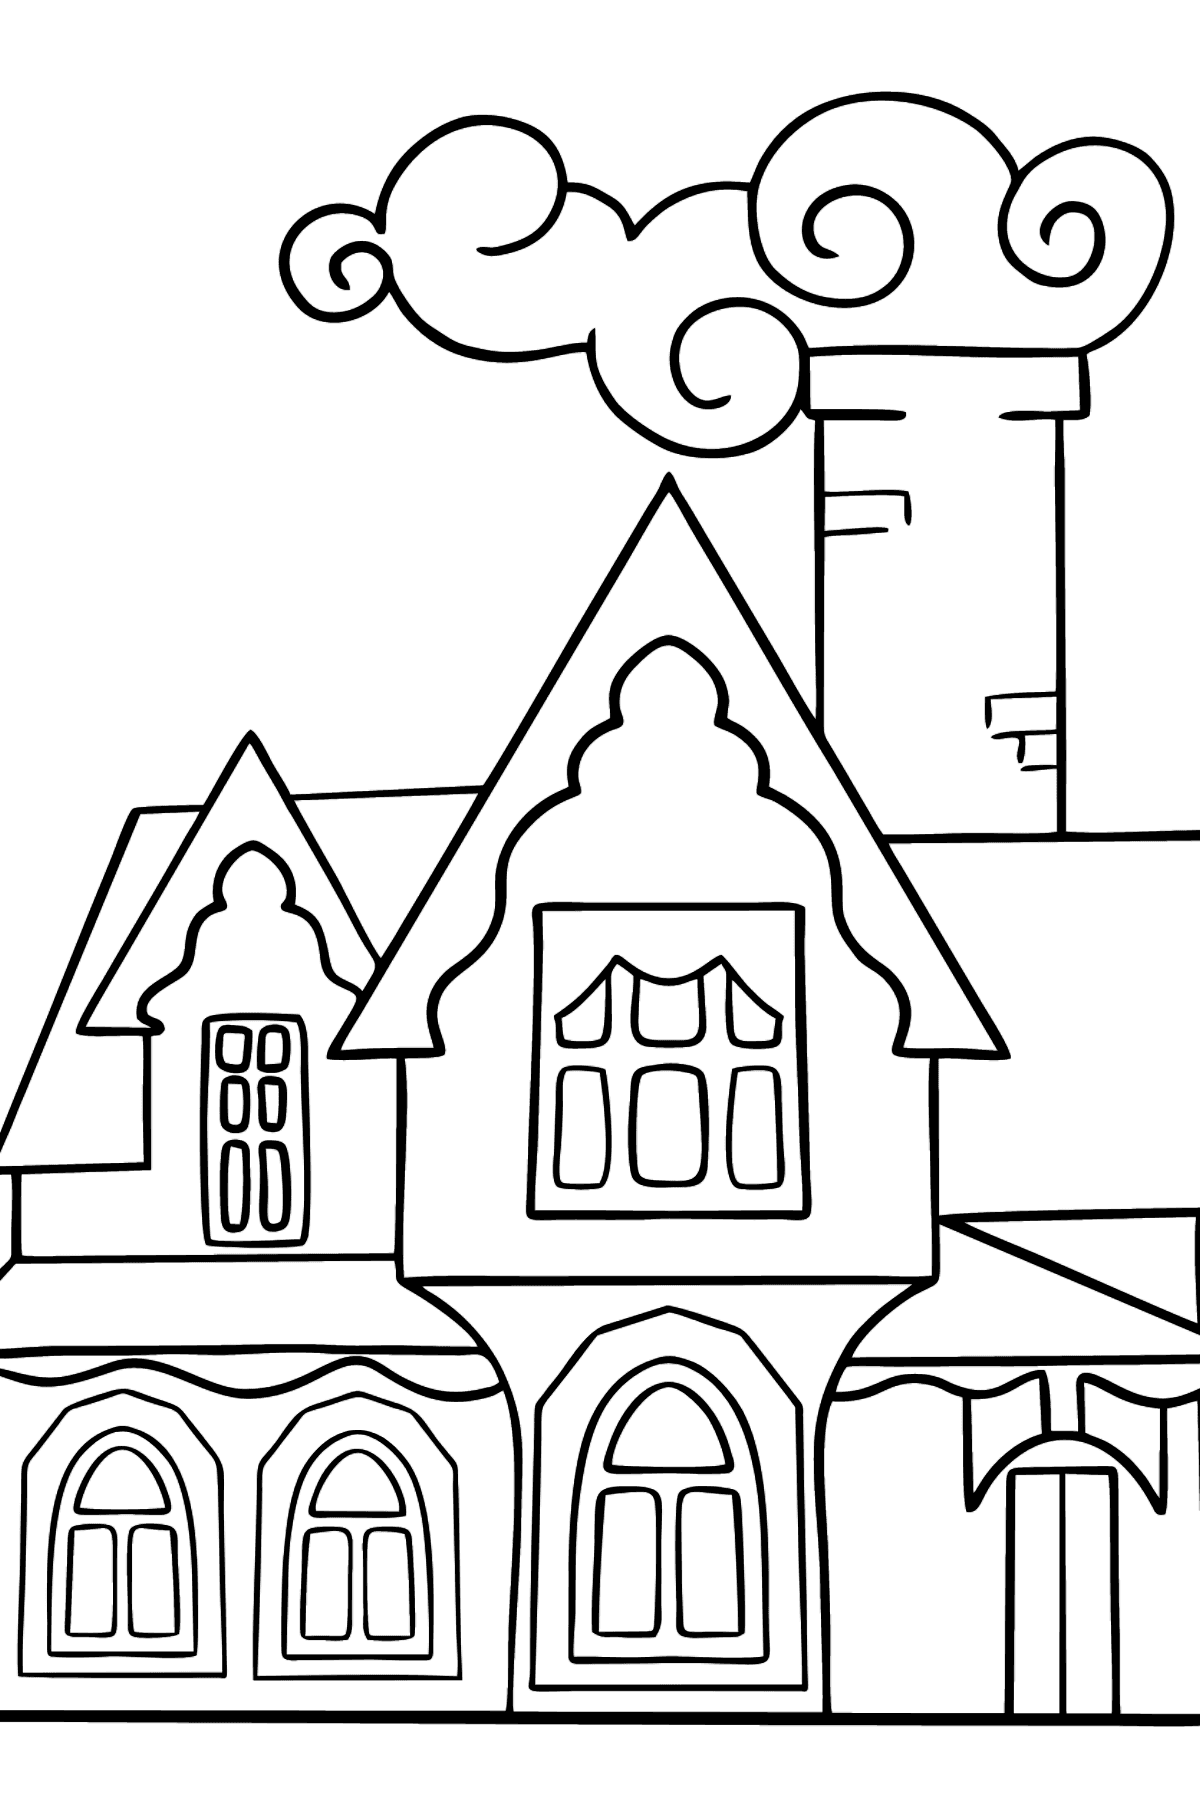 Tegning til farvning mirakuløst hus (let) - Tegninger til farvelægning for børn